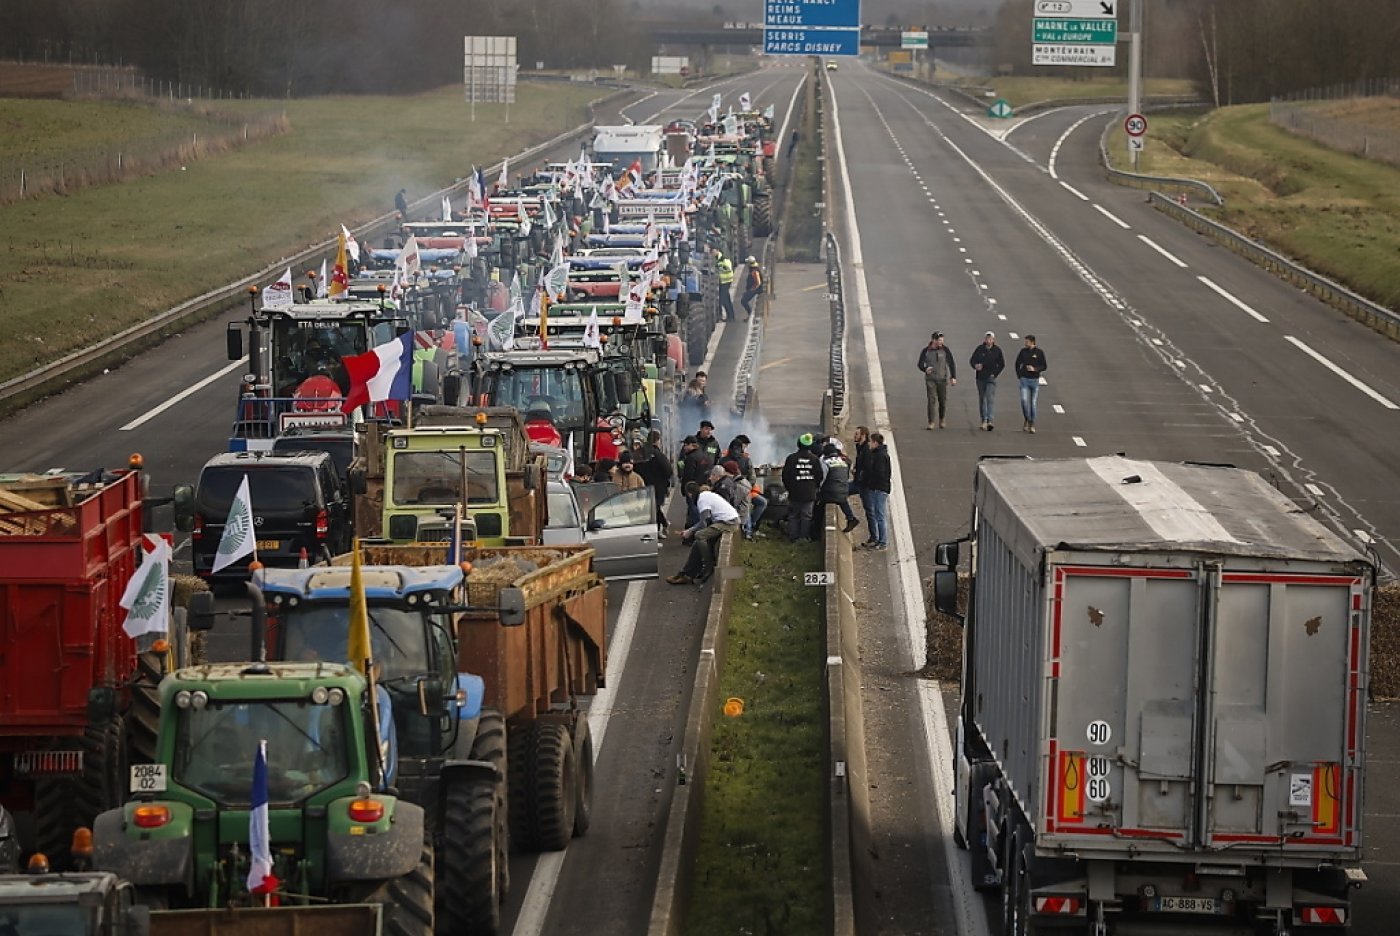 Les agriculteurs français avaient protesté notamment en bloquant des autoroutes, comme ici à Jossigny près de Paris (archives). KEYSTONE